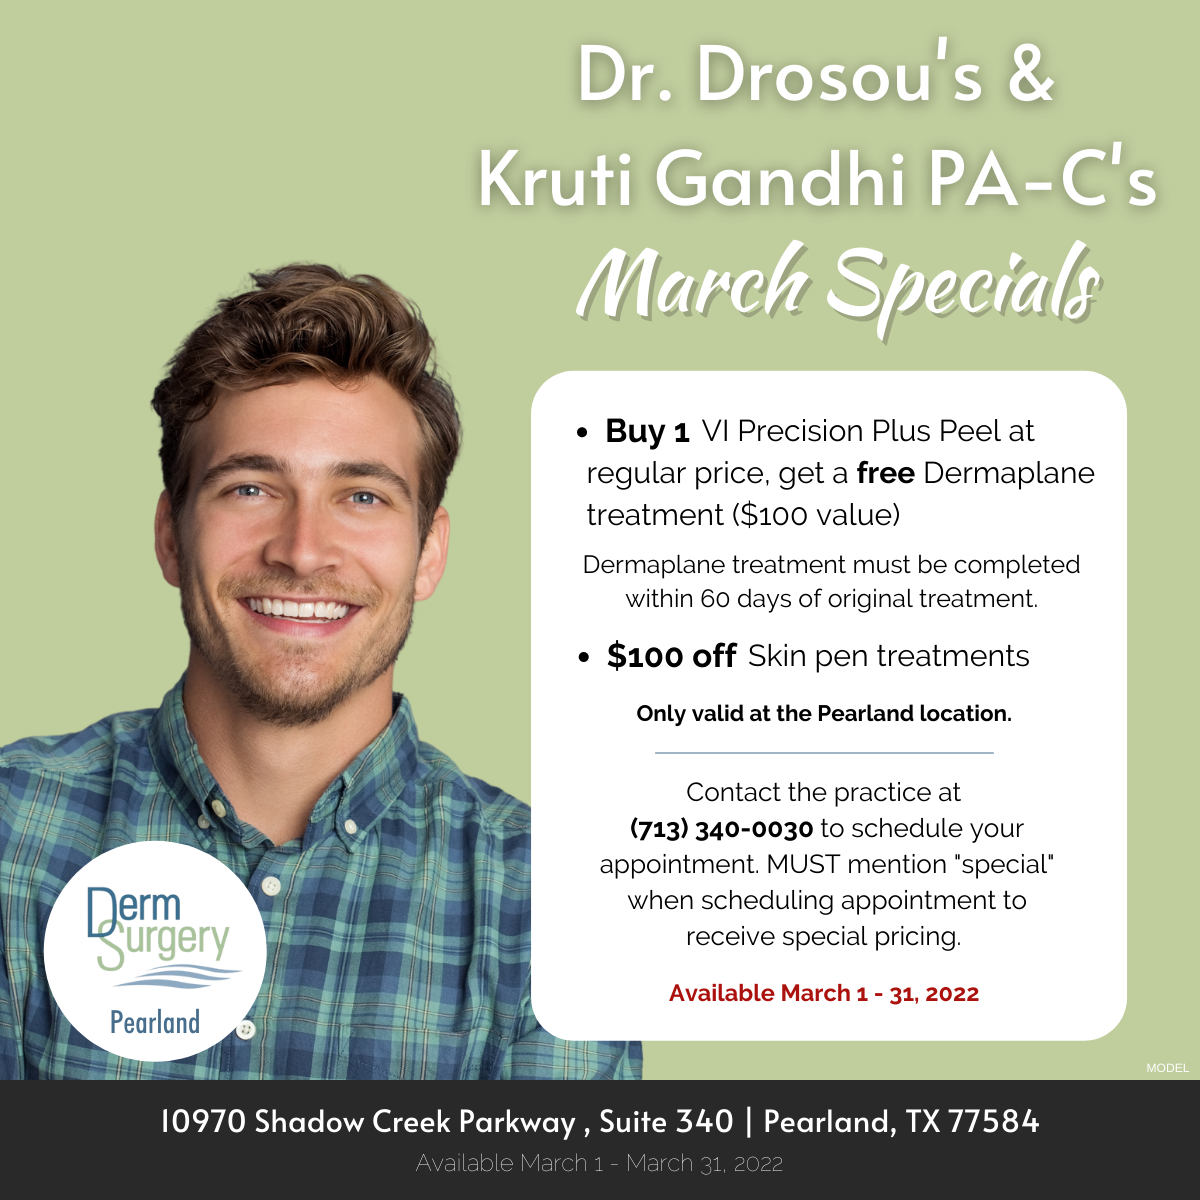 Dr. Drosou's & Kruti Gandhi PA-C's March Specials